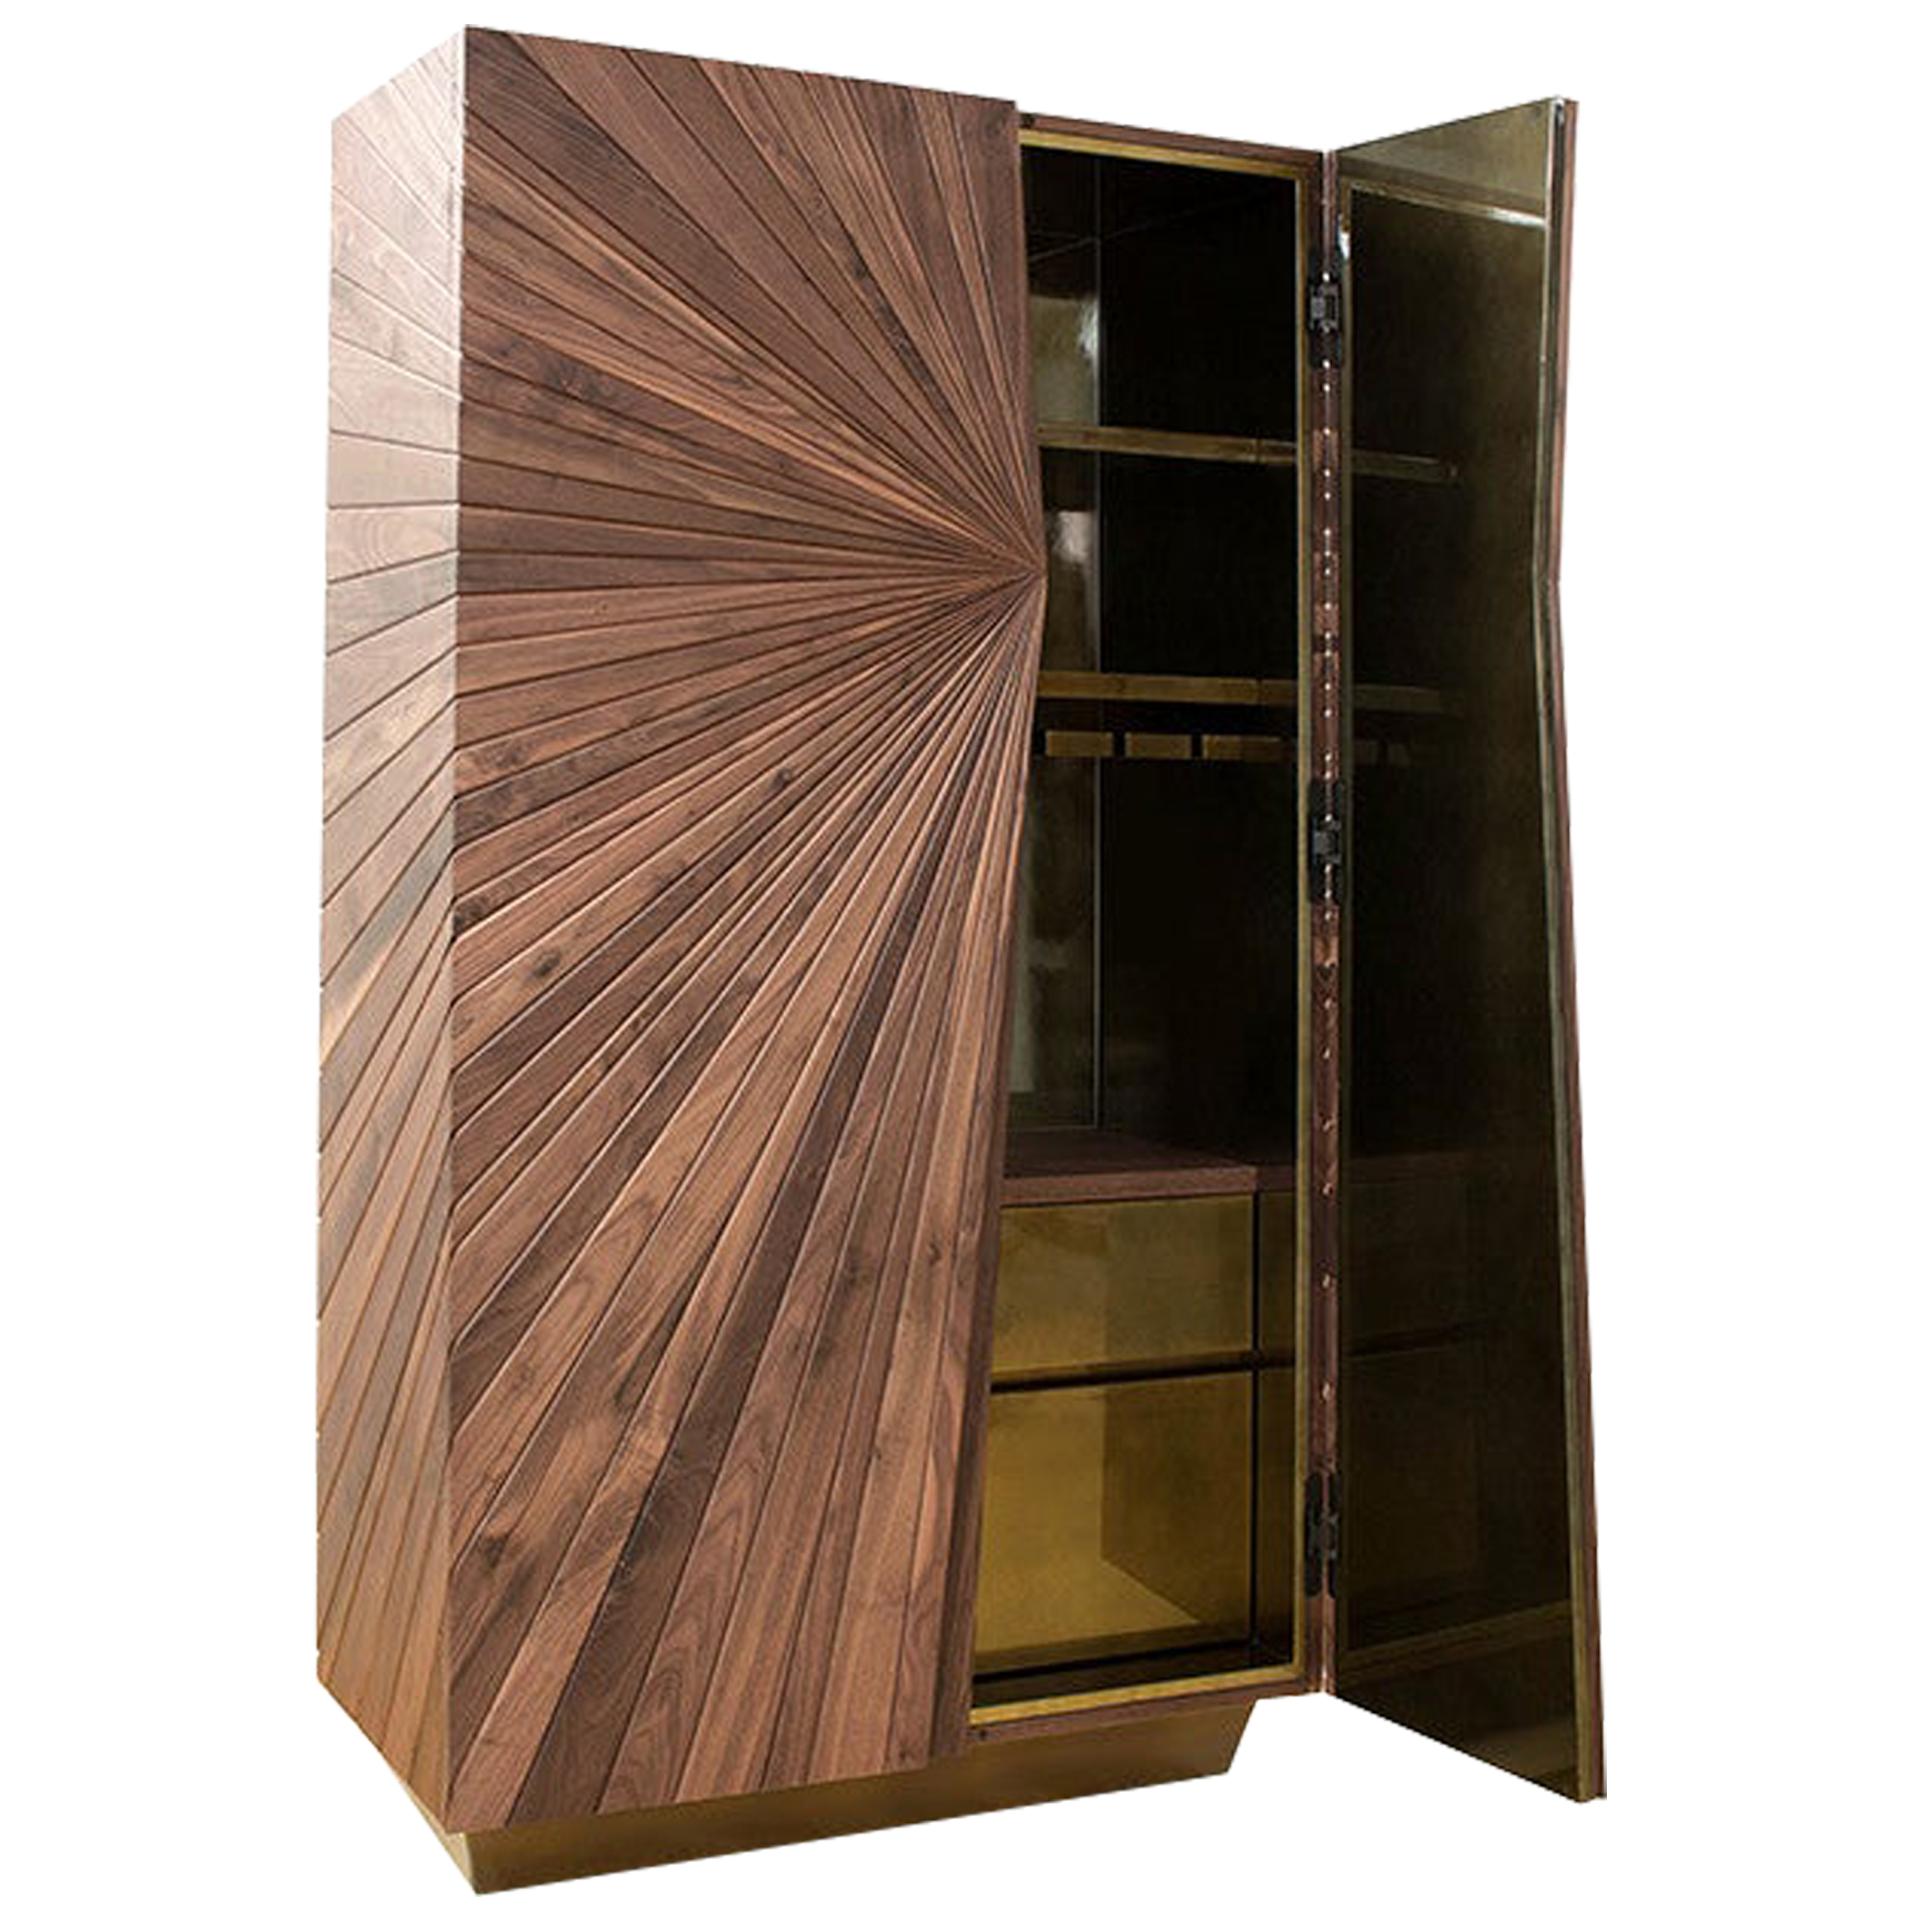 Walnut Modern Cabinet, Shinning Interior, Handmade, Unique Woodwork